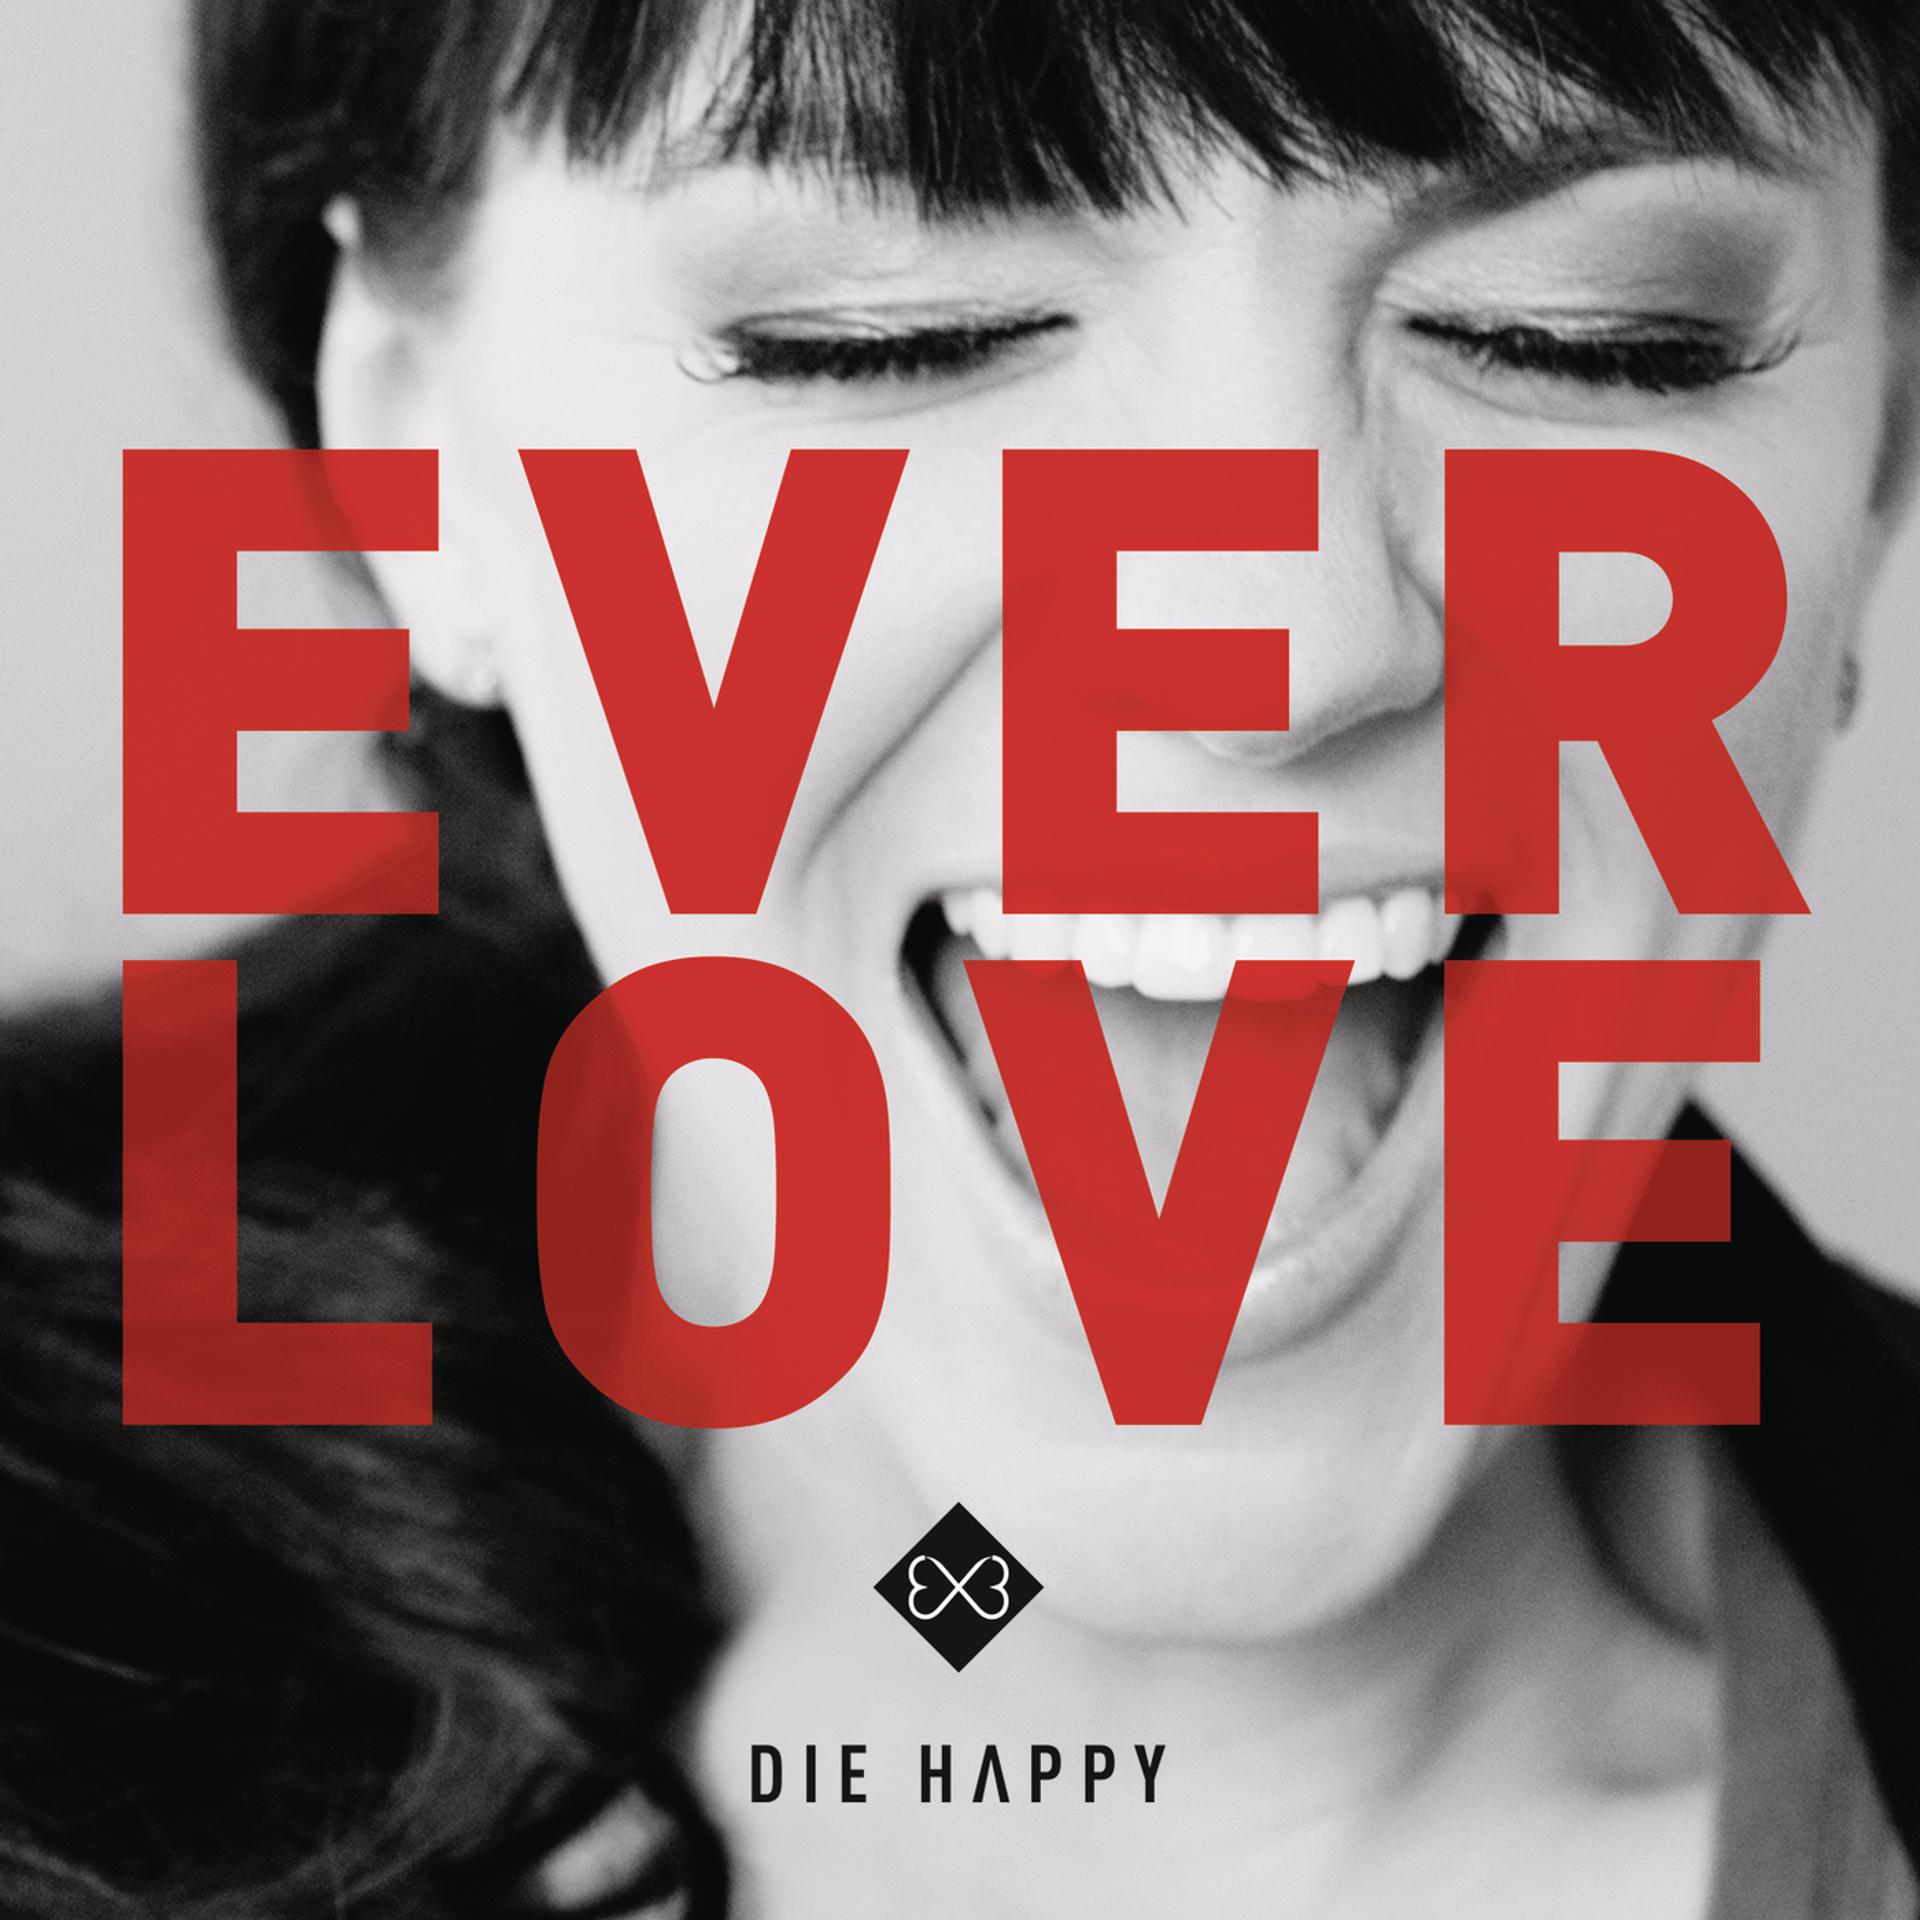 Группа die Happy. Die Happy - Survivor. The Everlove. Die Happy - guess what (2020). Die away